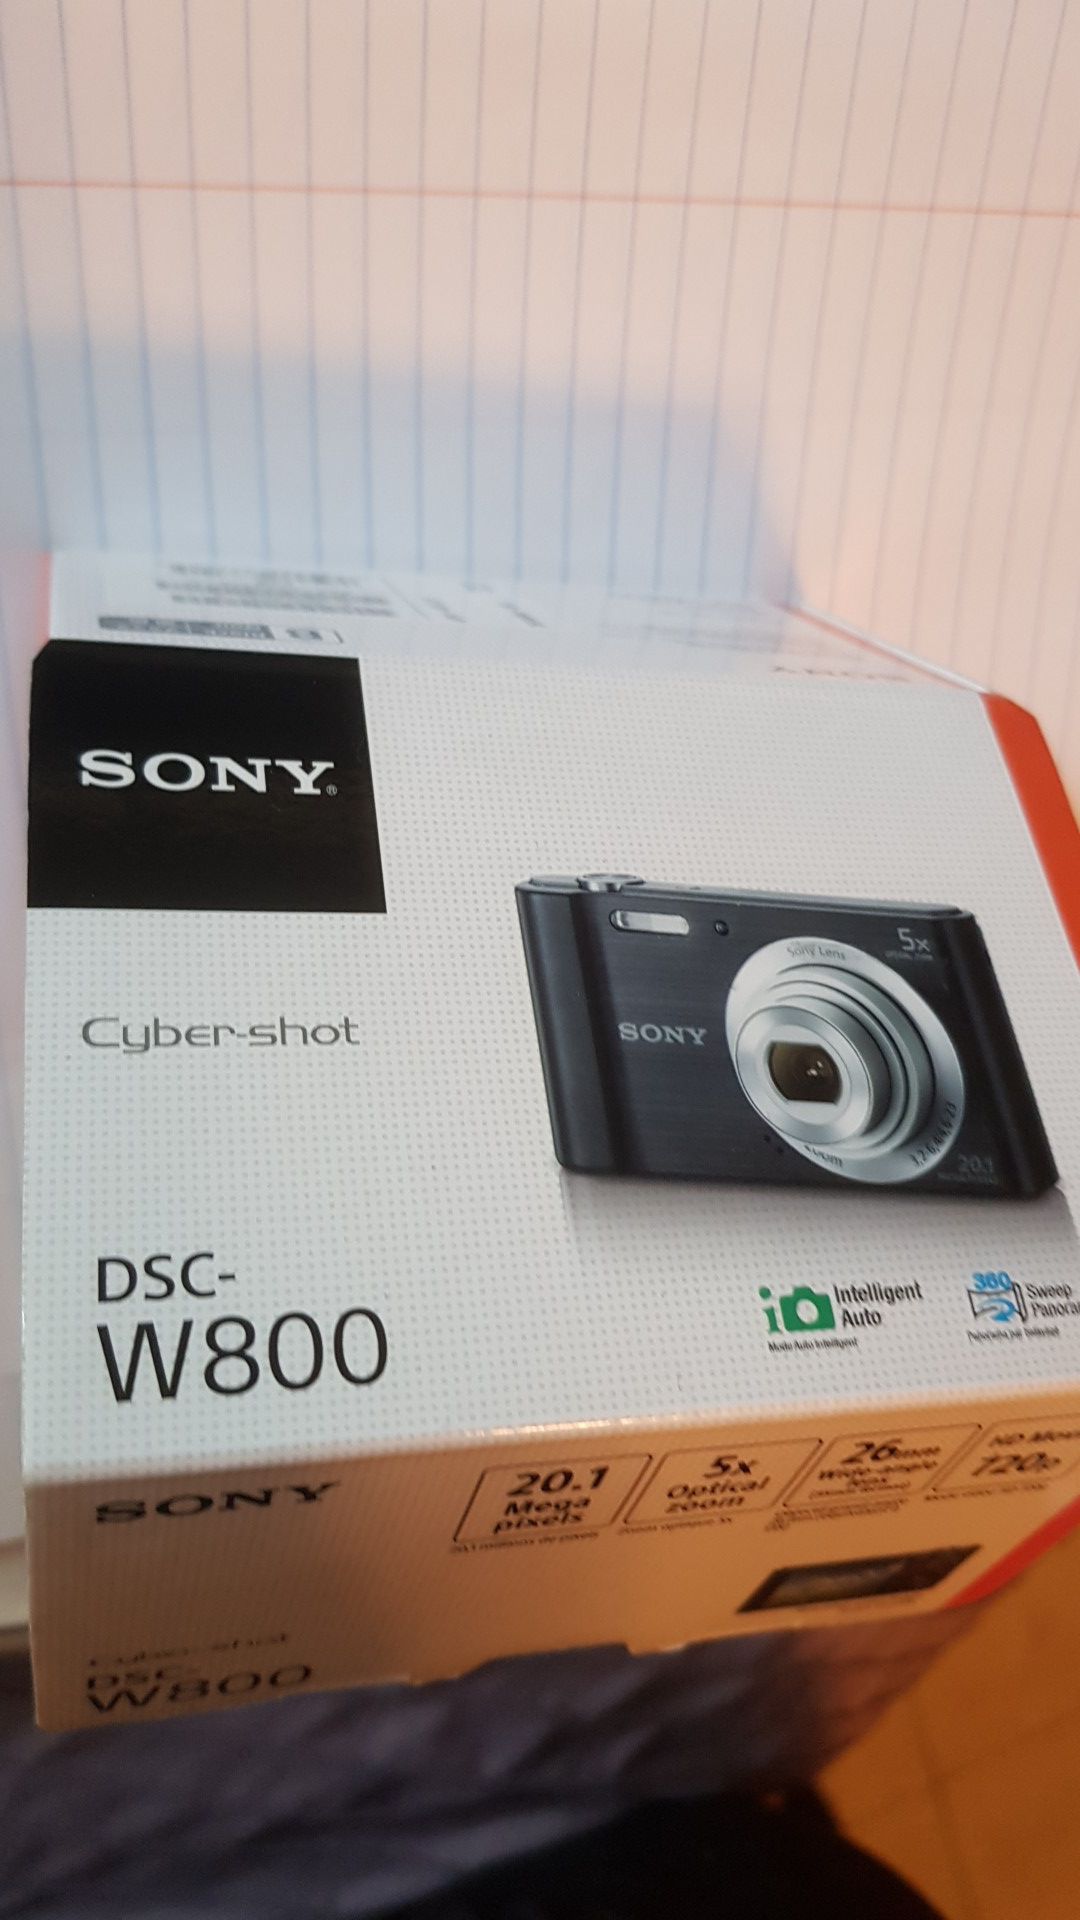 Sony dsc-w800 cybershot digital camera